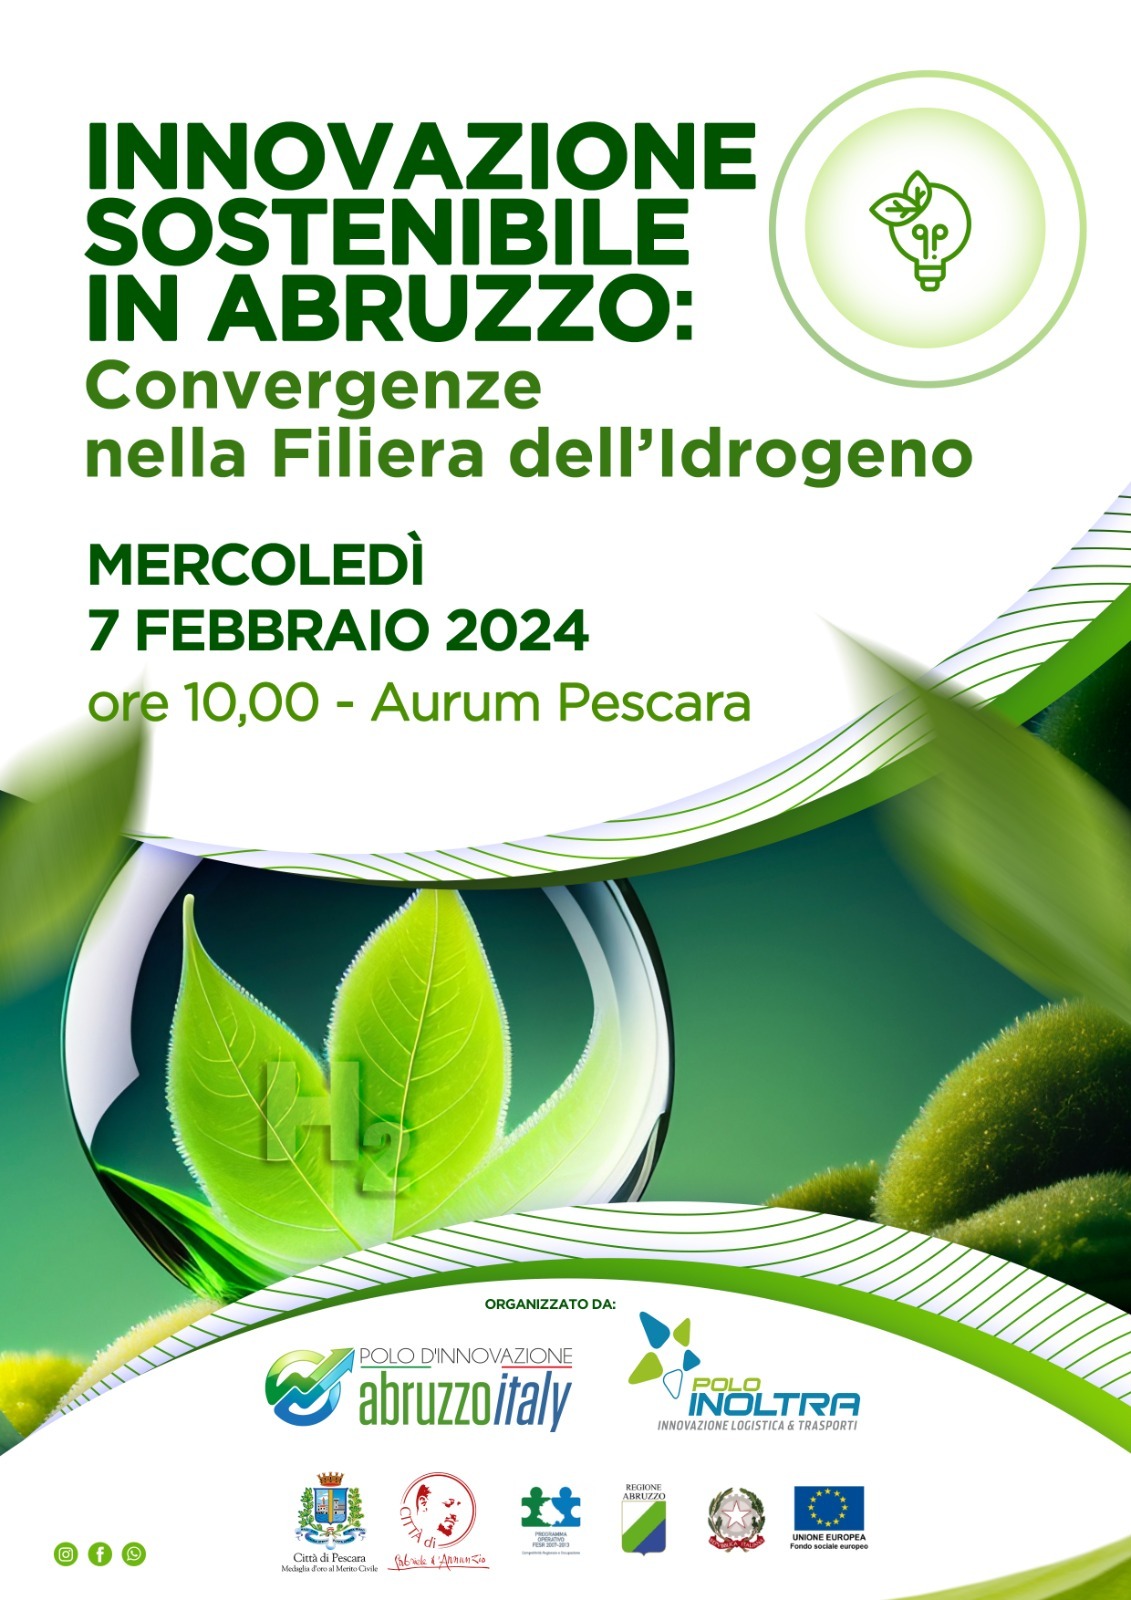 “Innovazione sostenibile in Abruzzo: Convergenze nella Filiera dell’Idrogeno” Convegno a Pescara il  7 febbraio 2024 